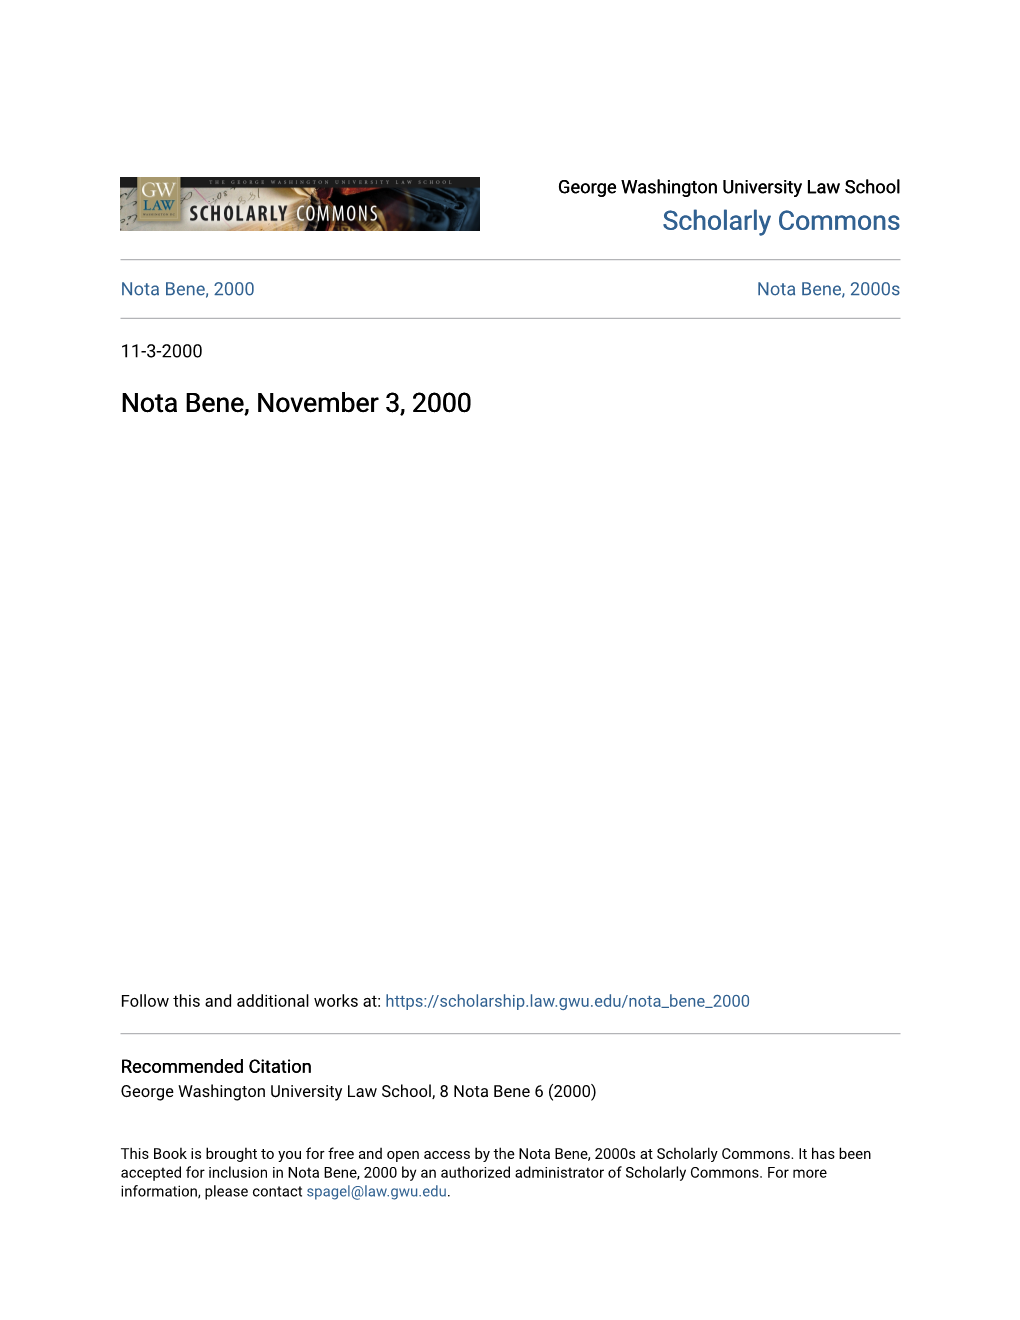 Nota Bene, November 3, 2000